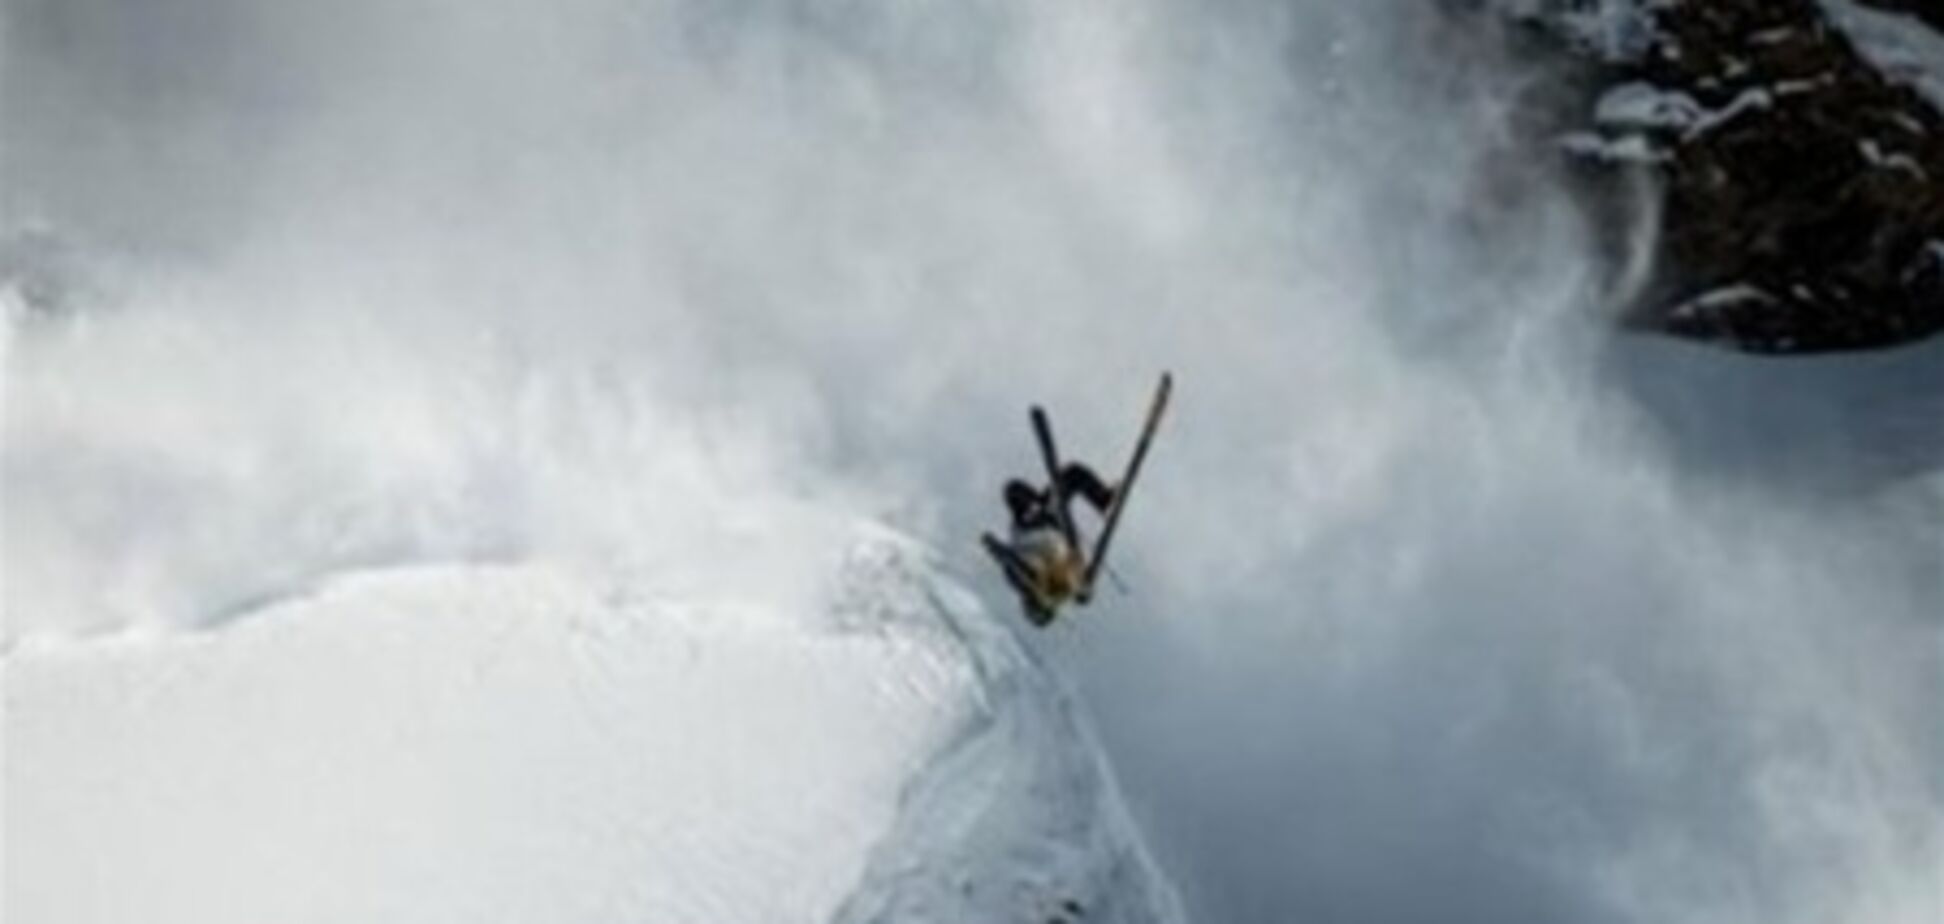 Ролик со спортсменом, спасающимся от лавины, бьет рекорды в интернете